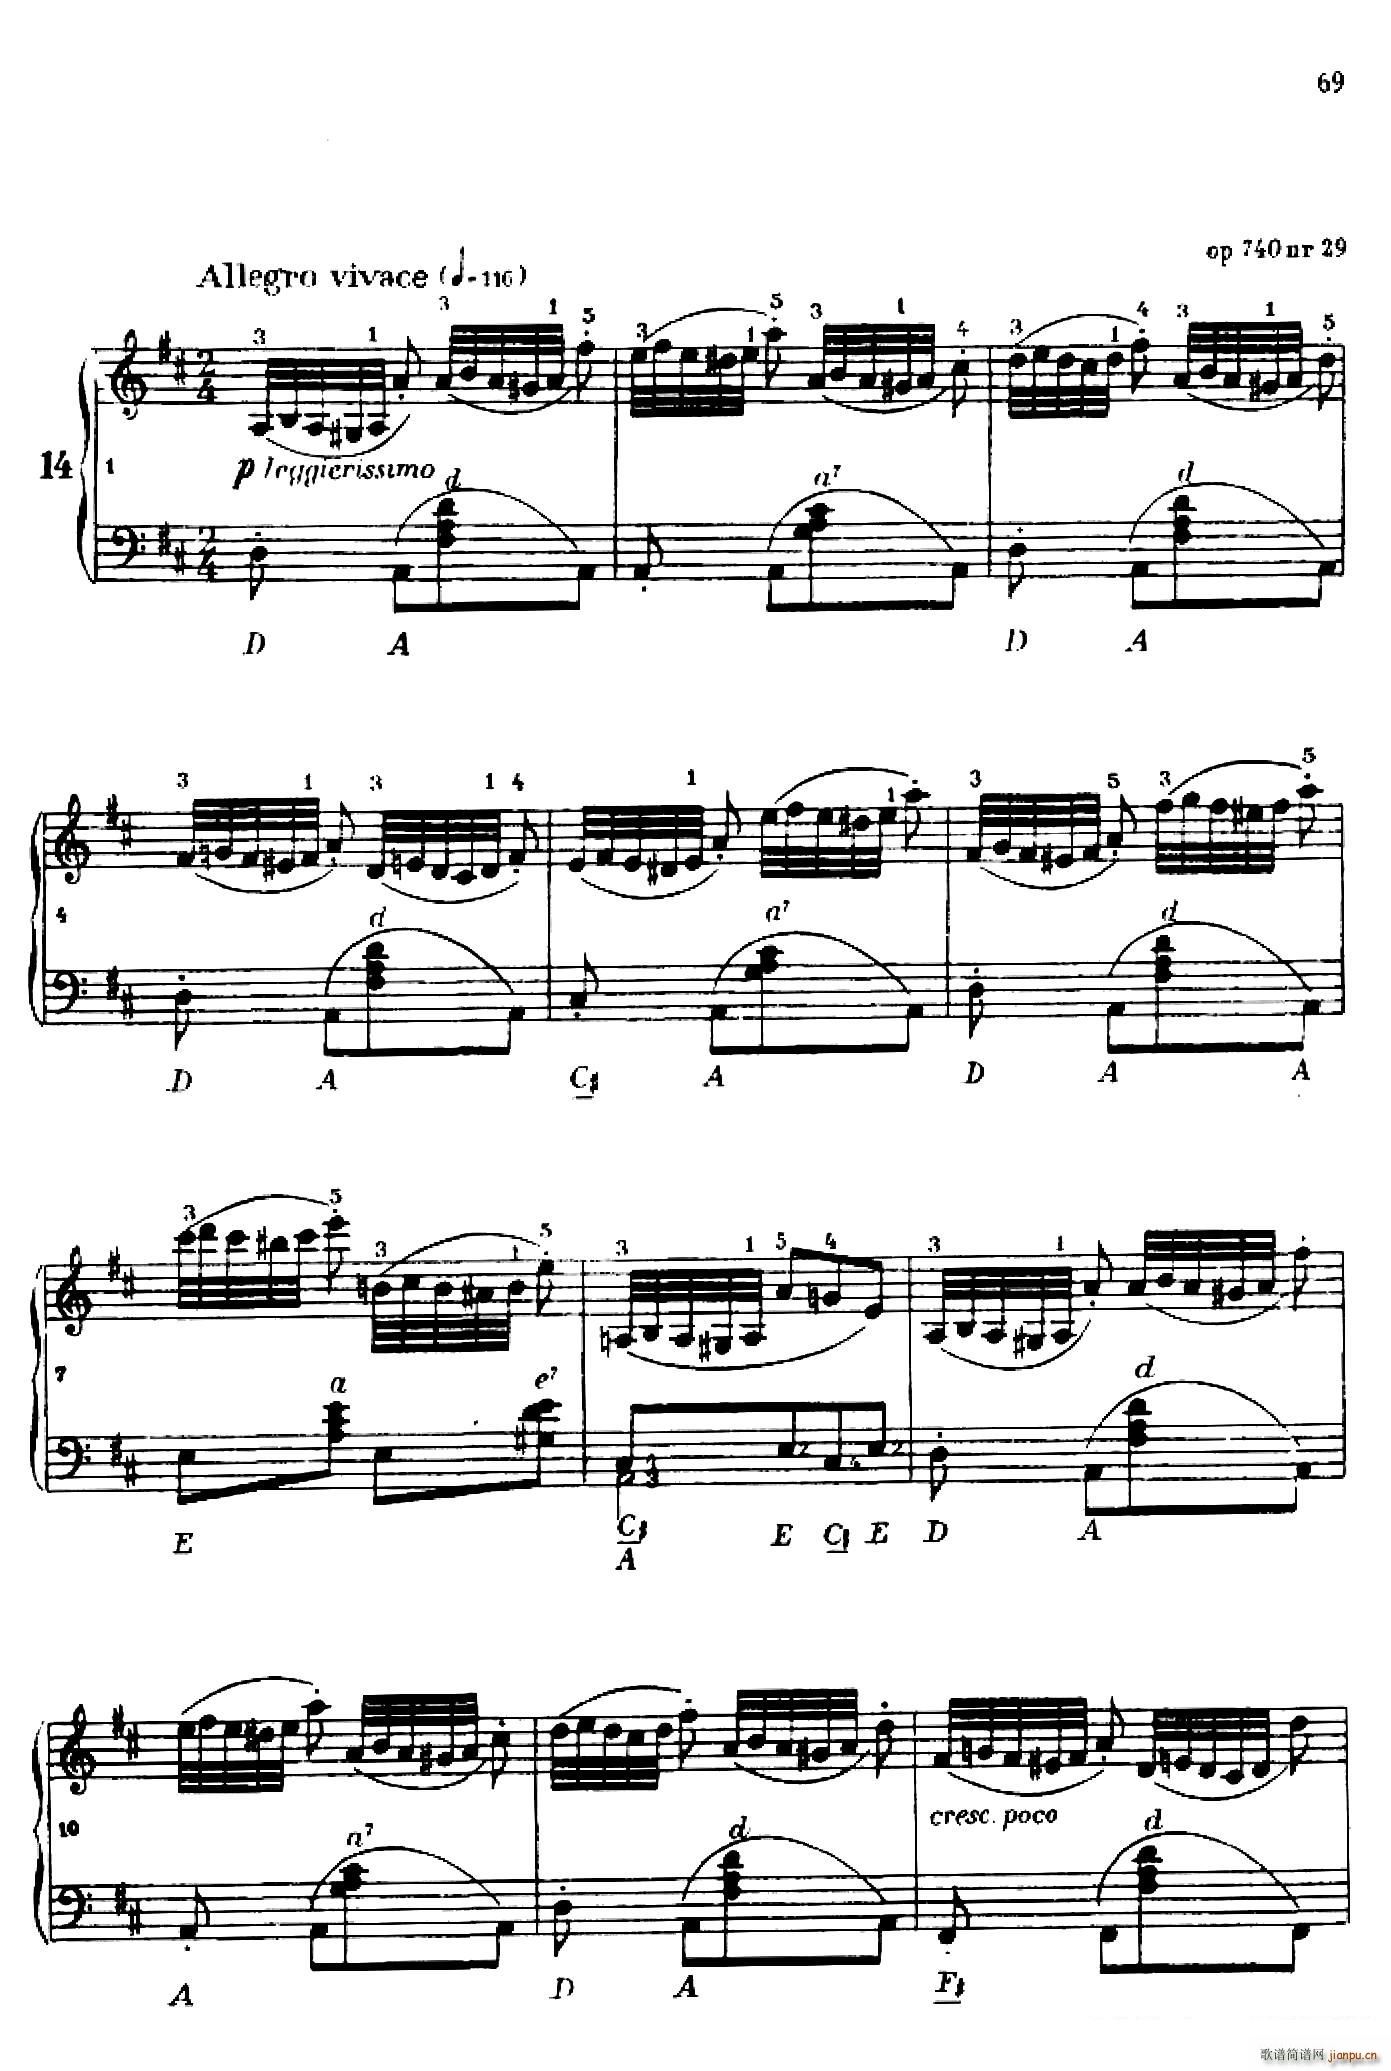 车尔尼手风琴练习曲集 第Ⅳ册 第14 15首(手风琴谱)1